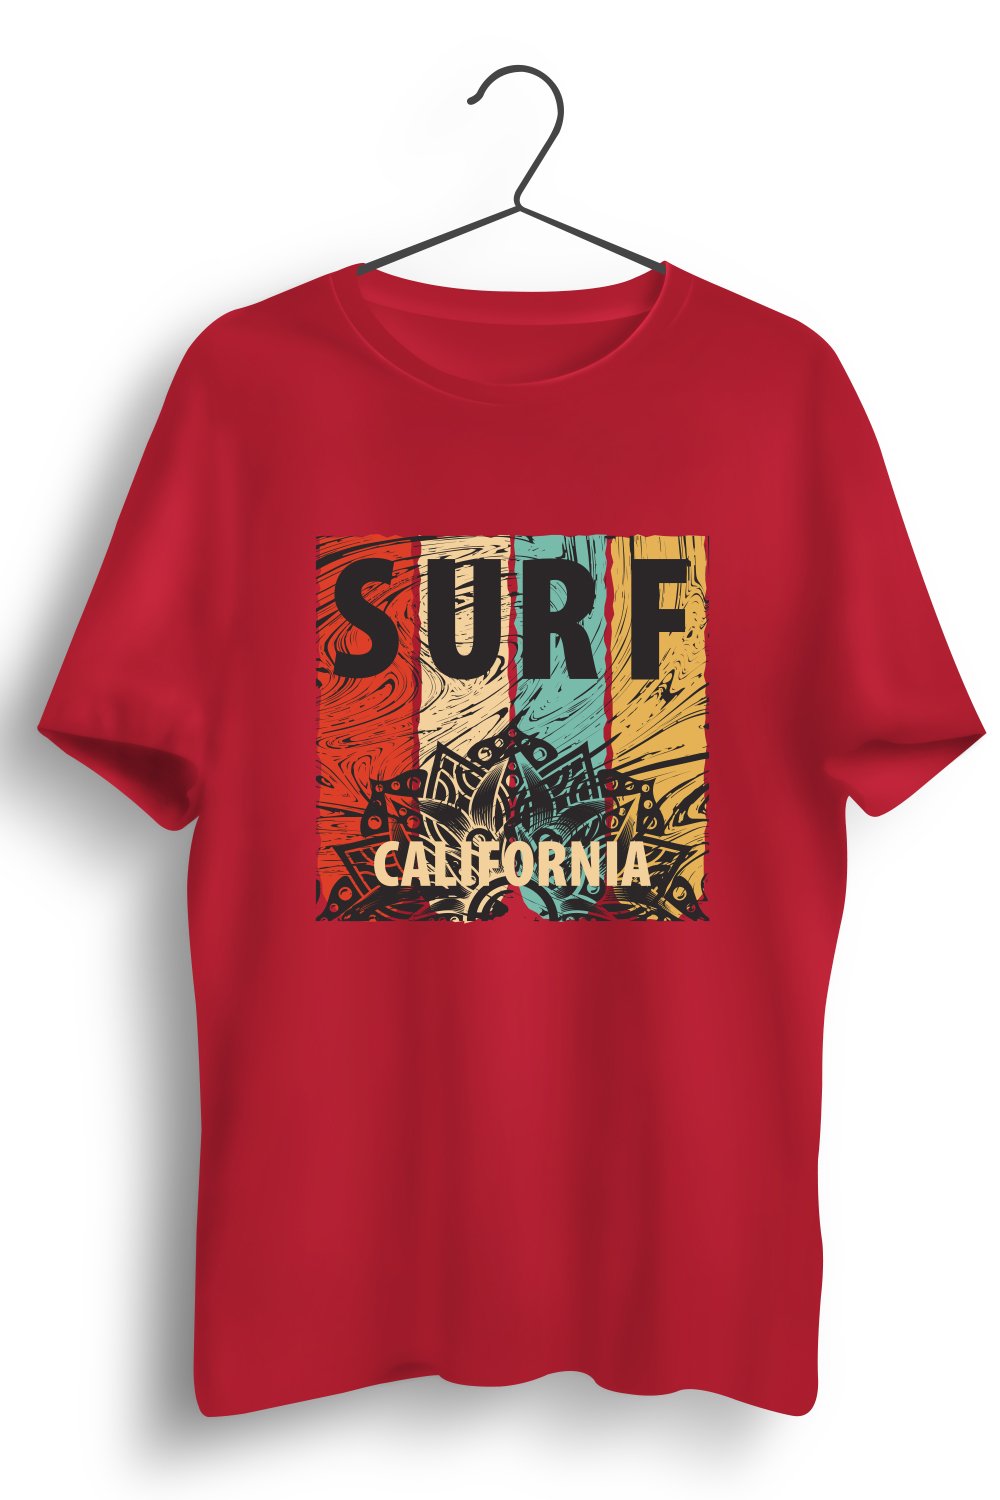 Surf California Graphic Printed Red Tshirt